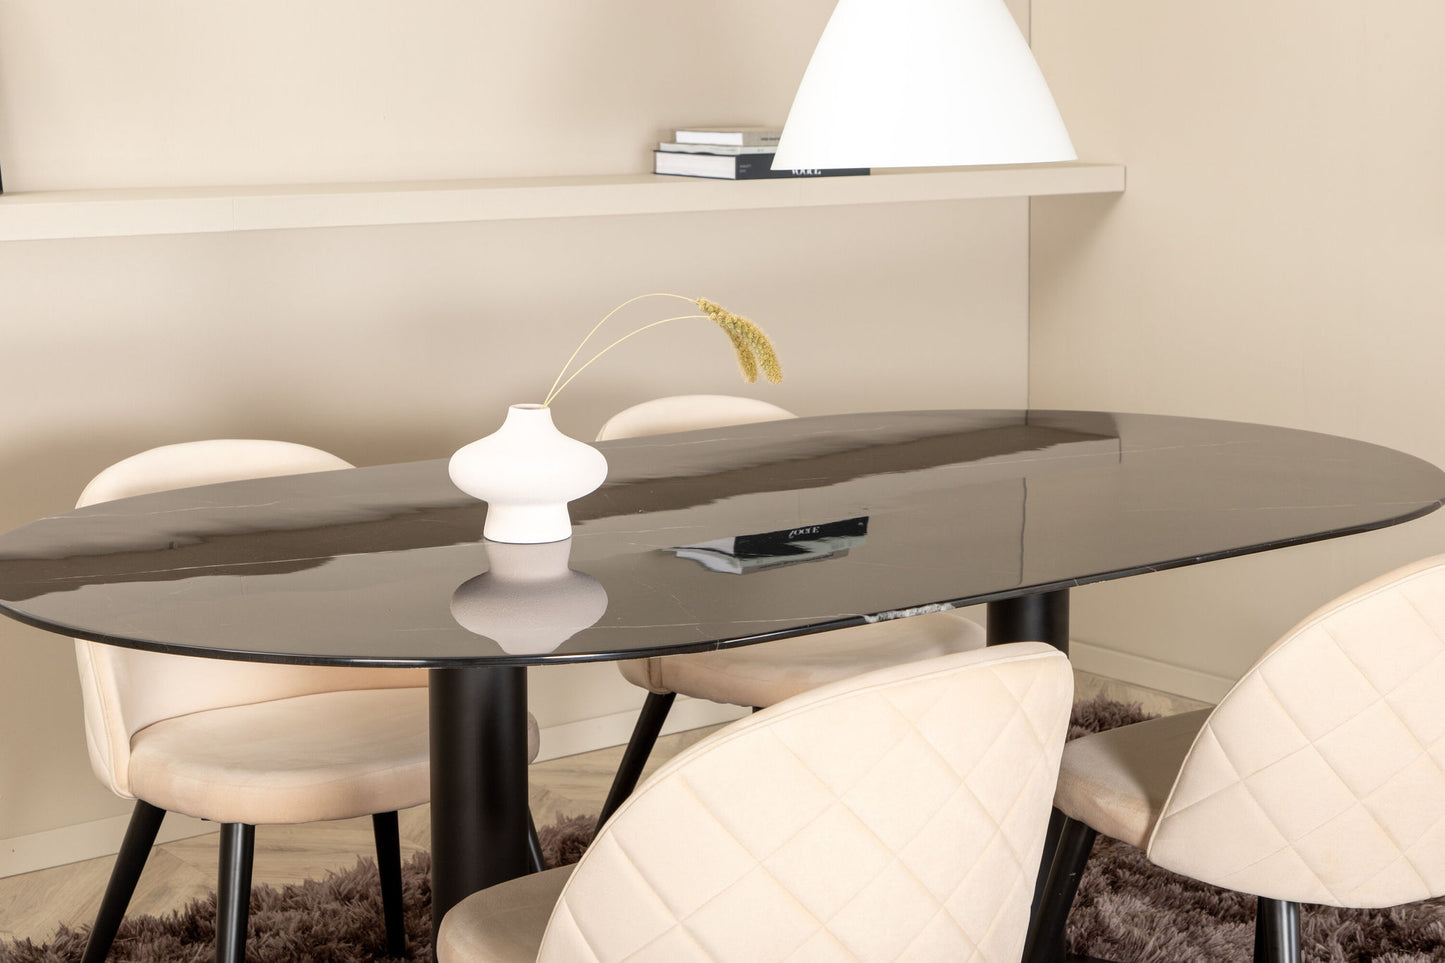 Pillan - Ovalt spisebord, Sort glas Marmor+ velour syninger Stol - Sort / Beige velour